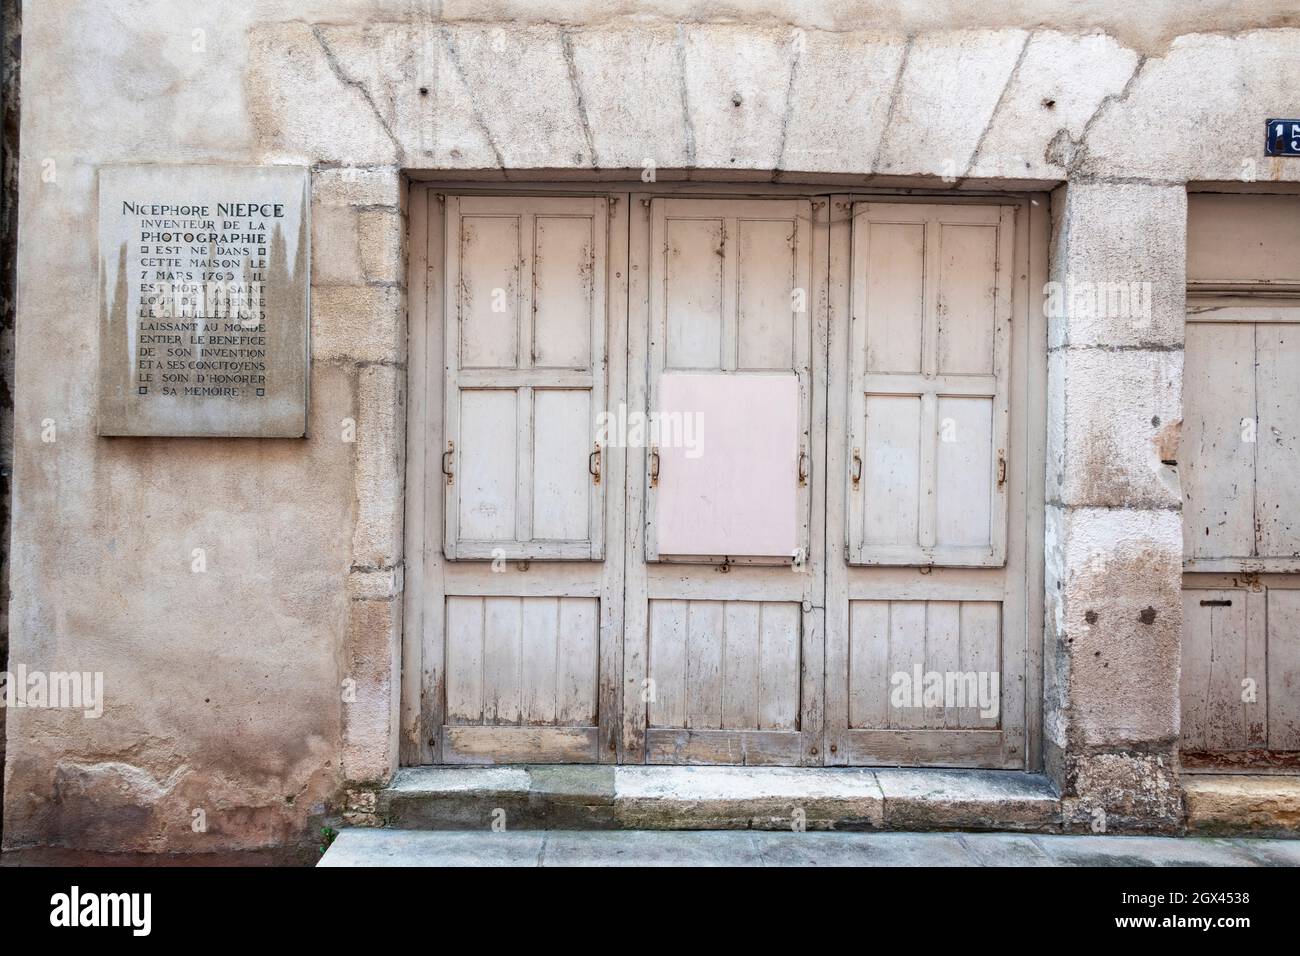 Der Eingang zum Geburtsort von Nicephore Niepce, dem Erfinder der Fotografie, Chalon-Sur-Saone, Ostfrankreich. Stockfoto